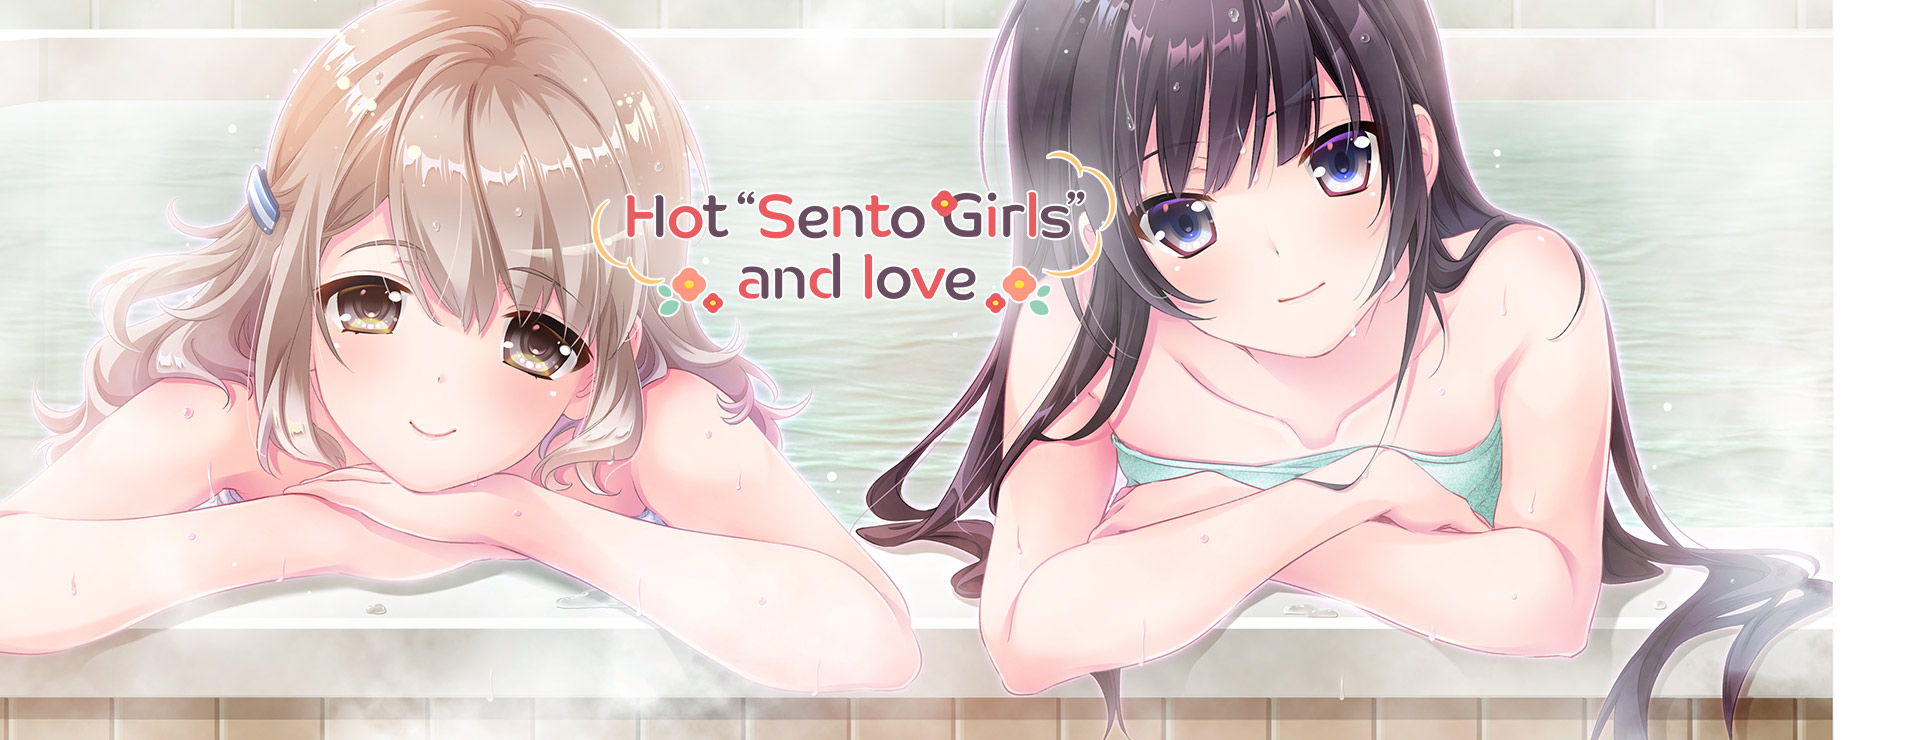 Hot "Sento Girls" and Love - ビジュアルノベル ゲーム